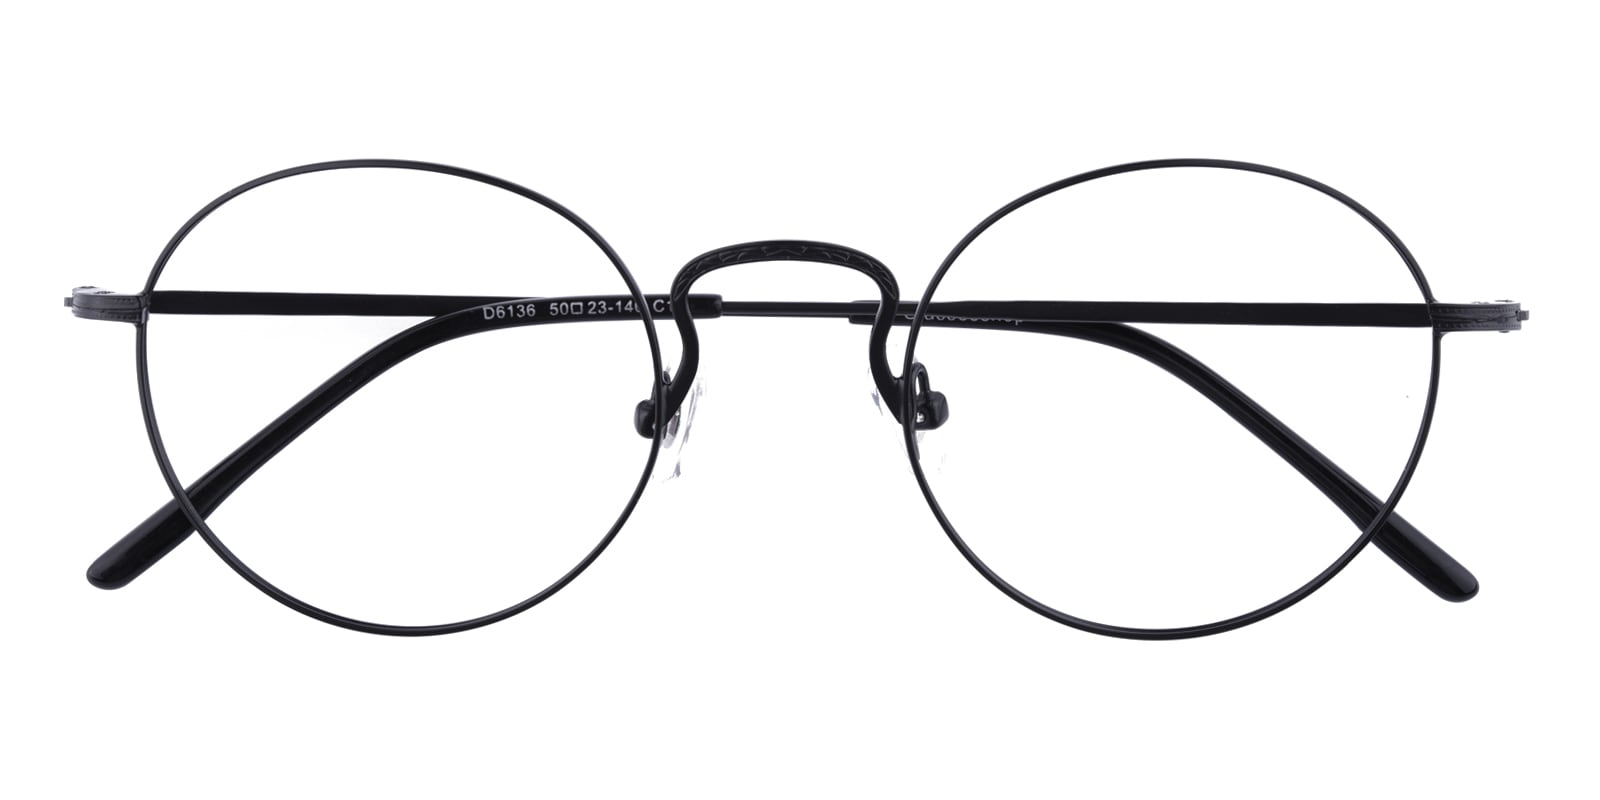 Round Eyeglasses, Full Frame Black Metal - FM1179